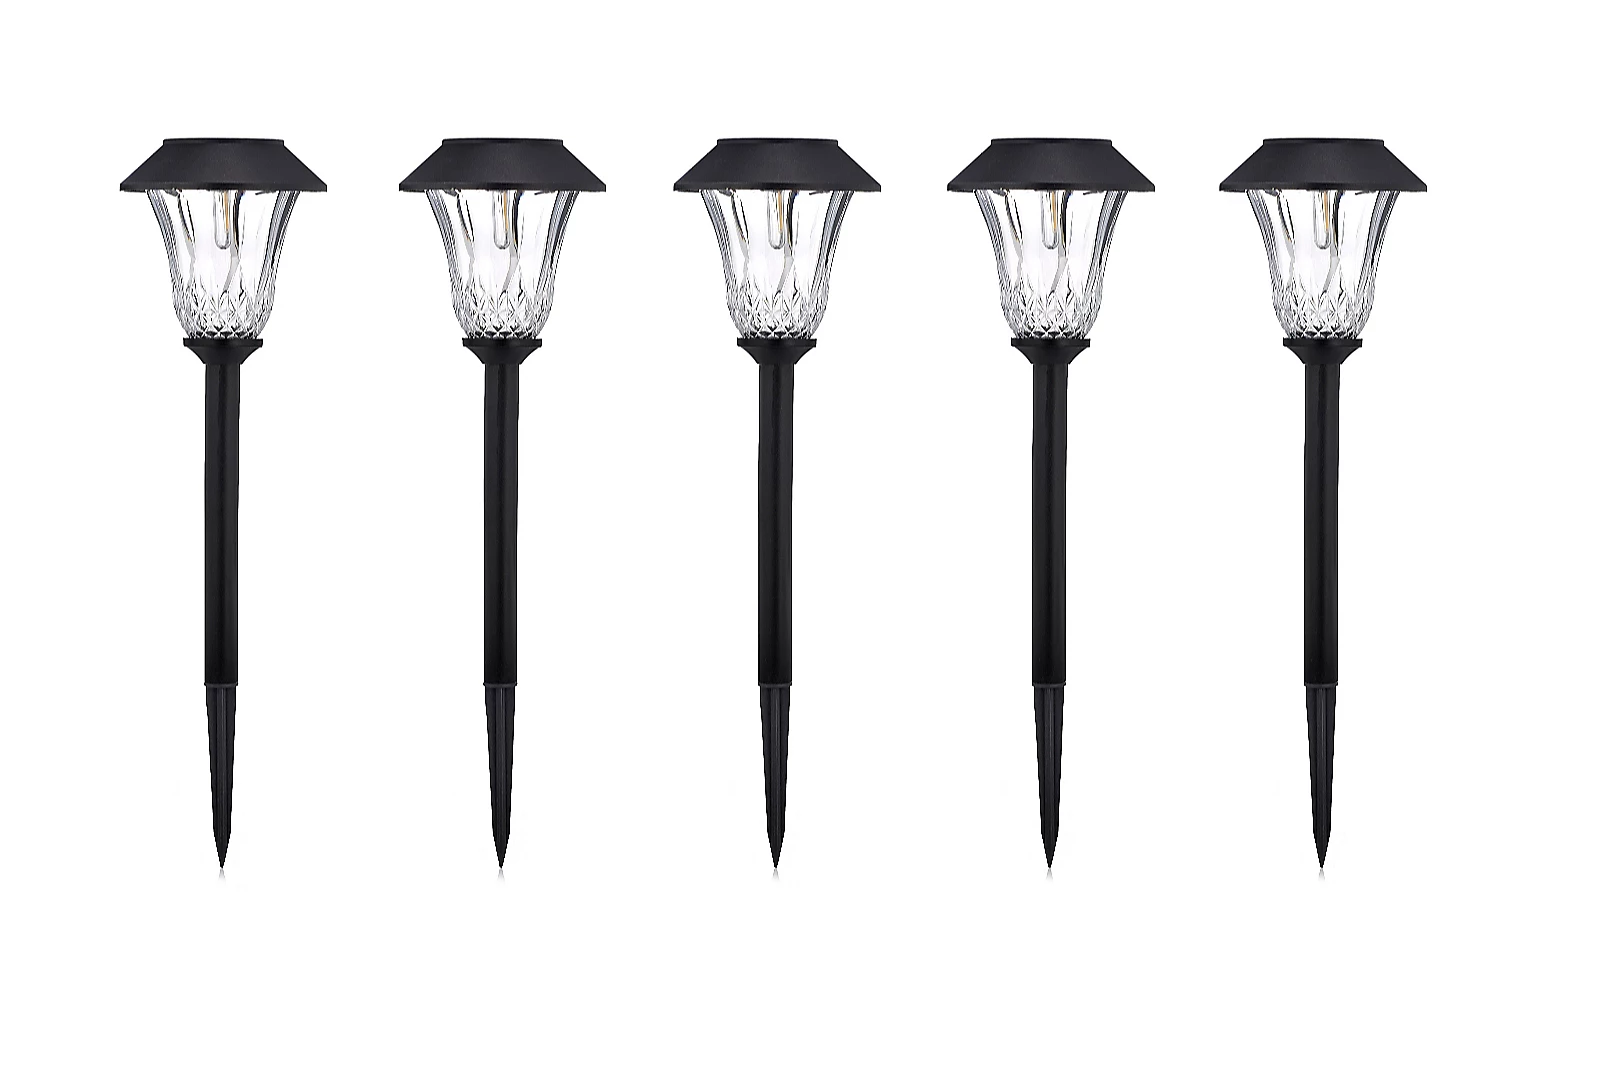 Luxform Set van 5 5 Lumen Filament LED tuinverlichting